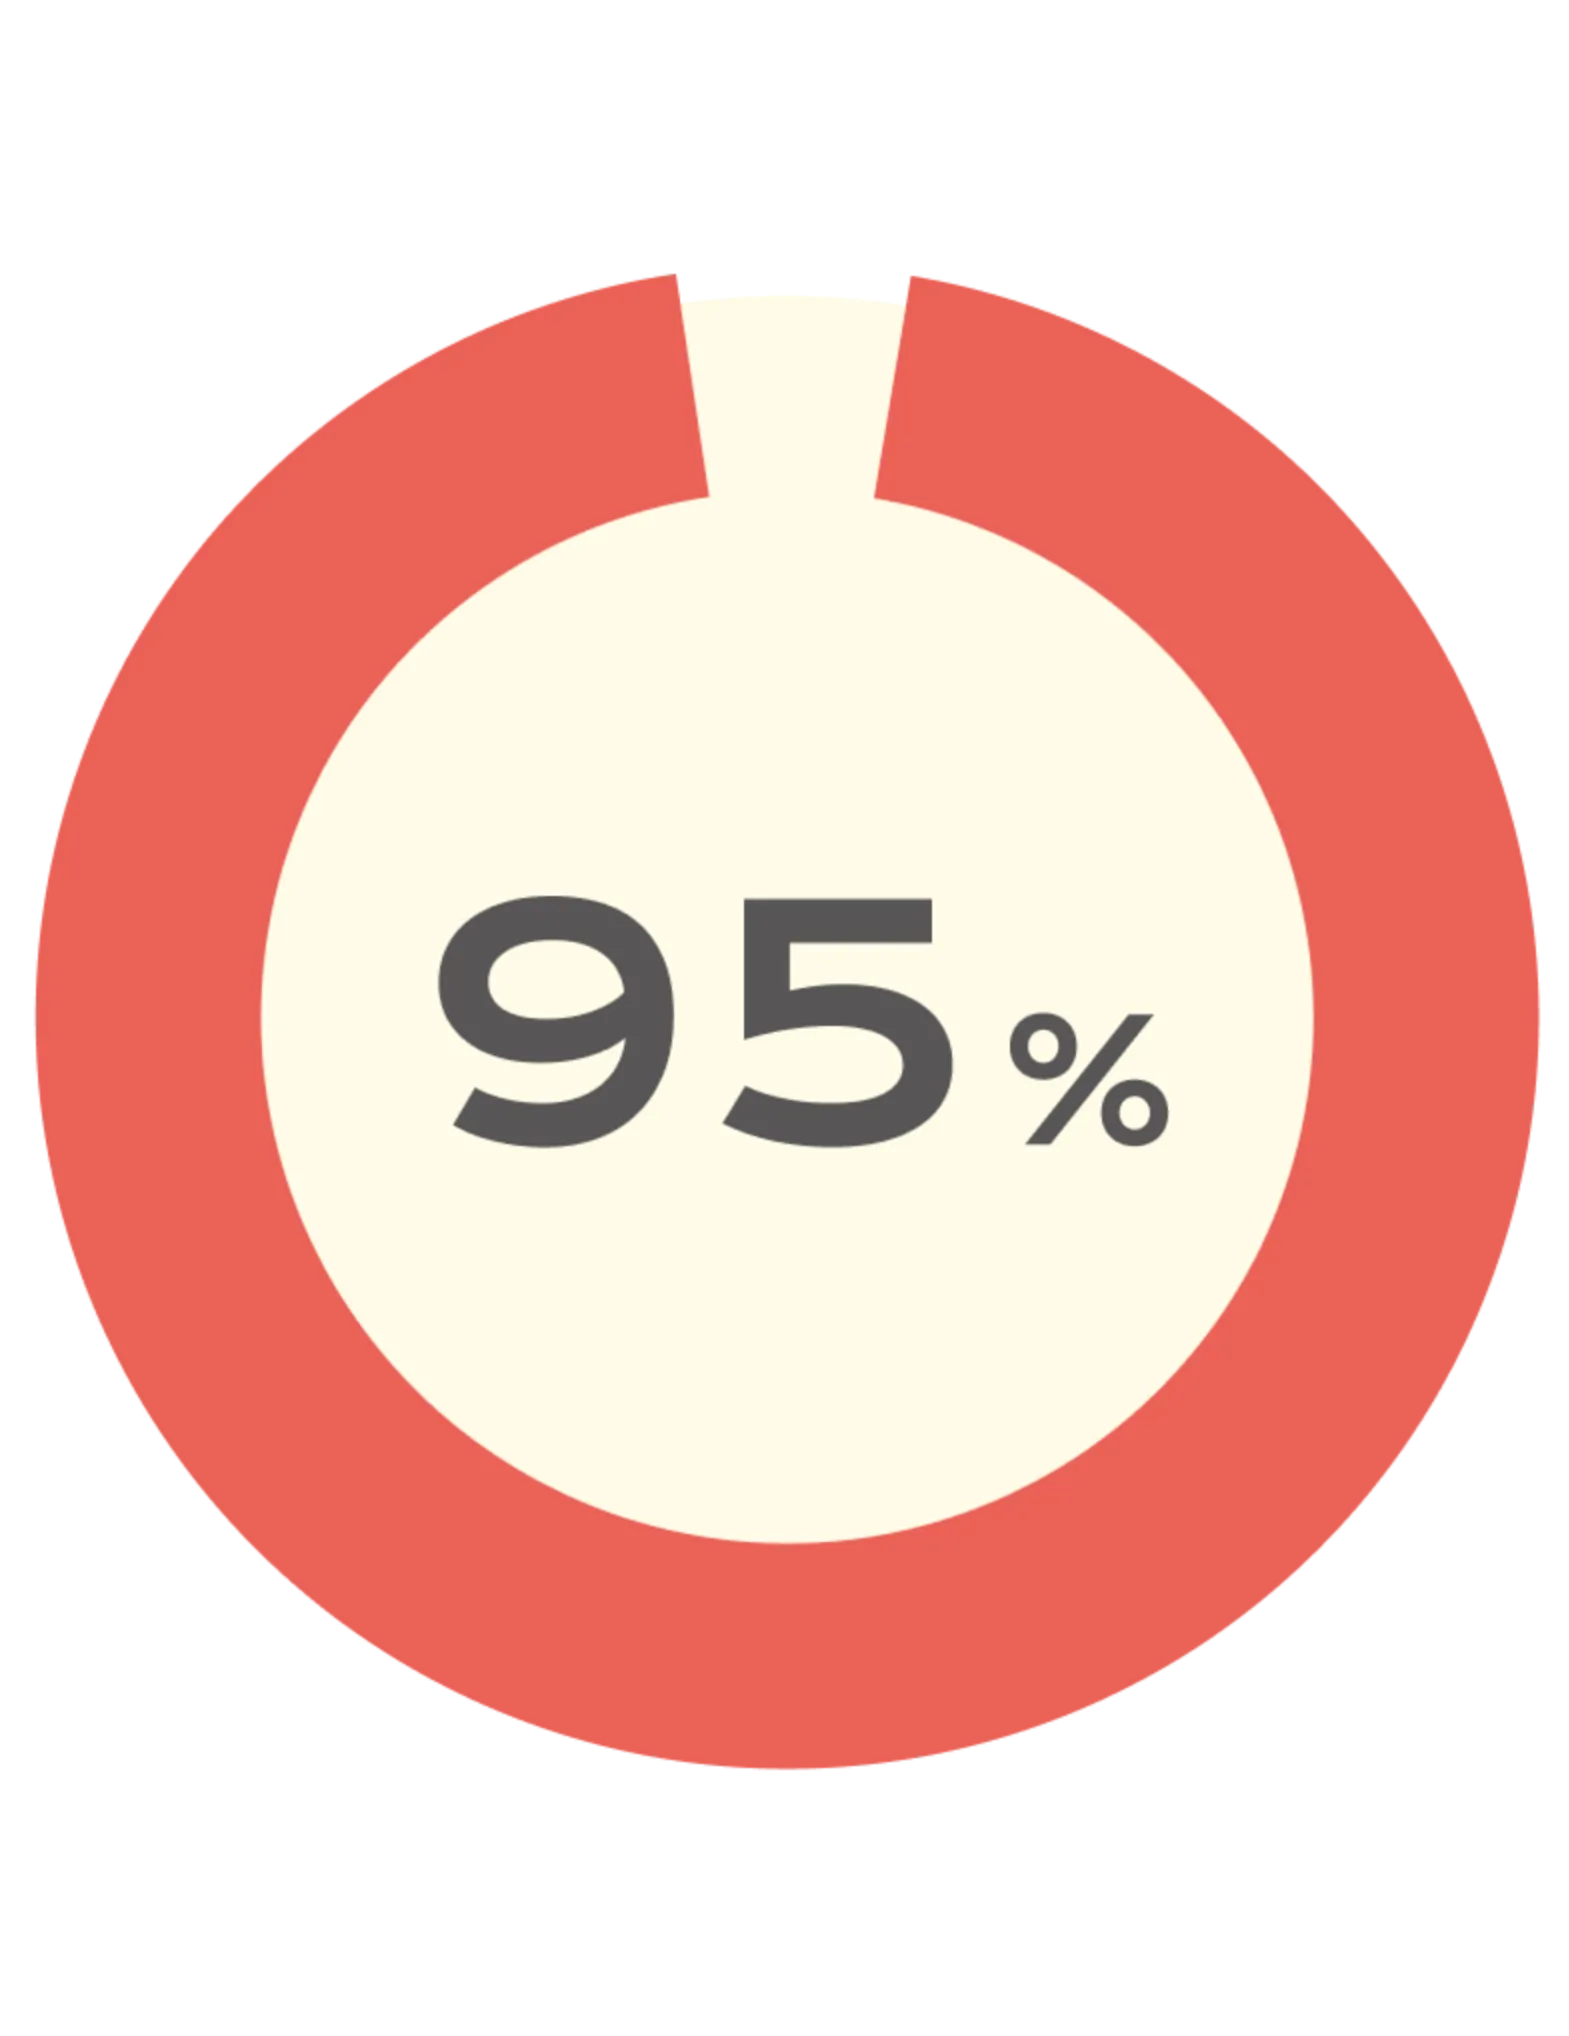 95%